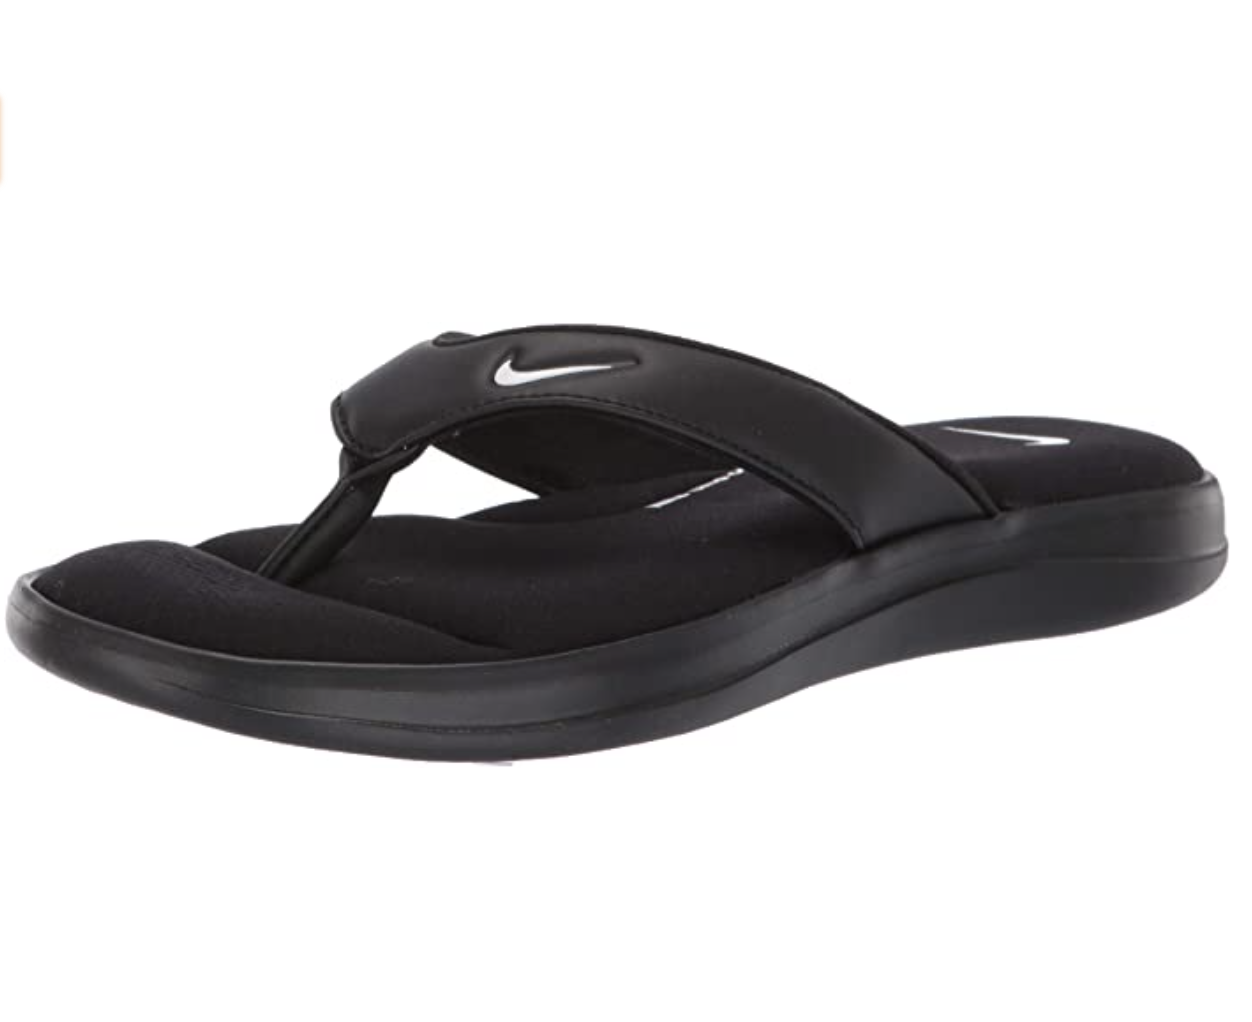 Nike Memory Foam Flip Flops Black Size 6 - $9 (70% Off Retail) - From  allison